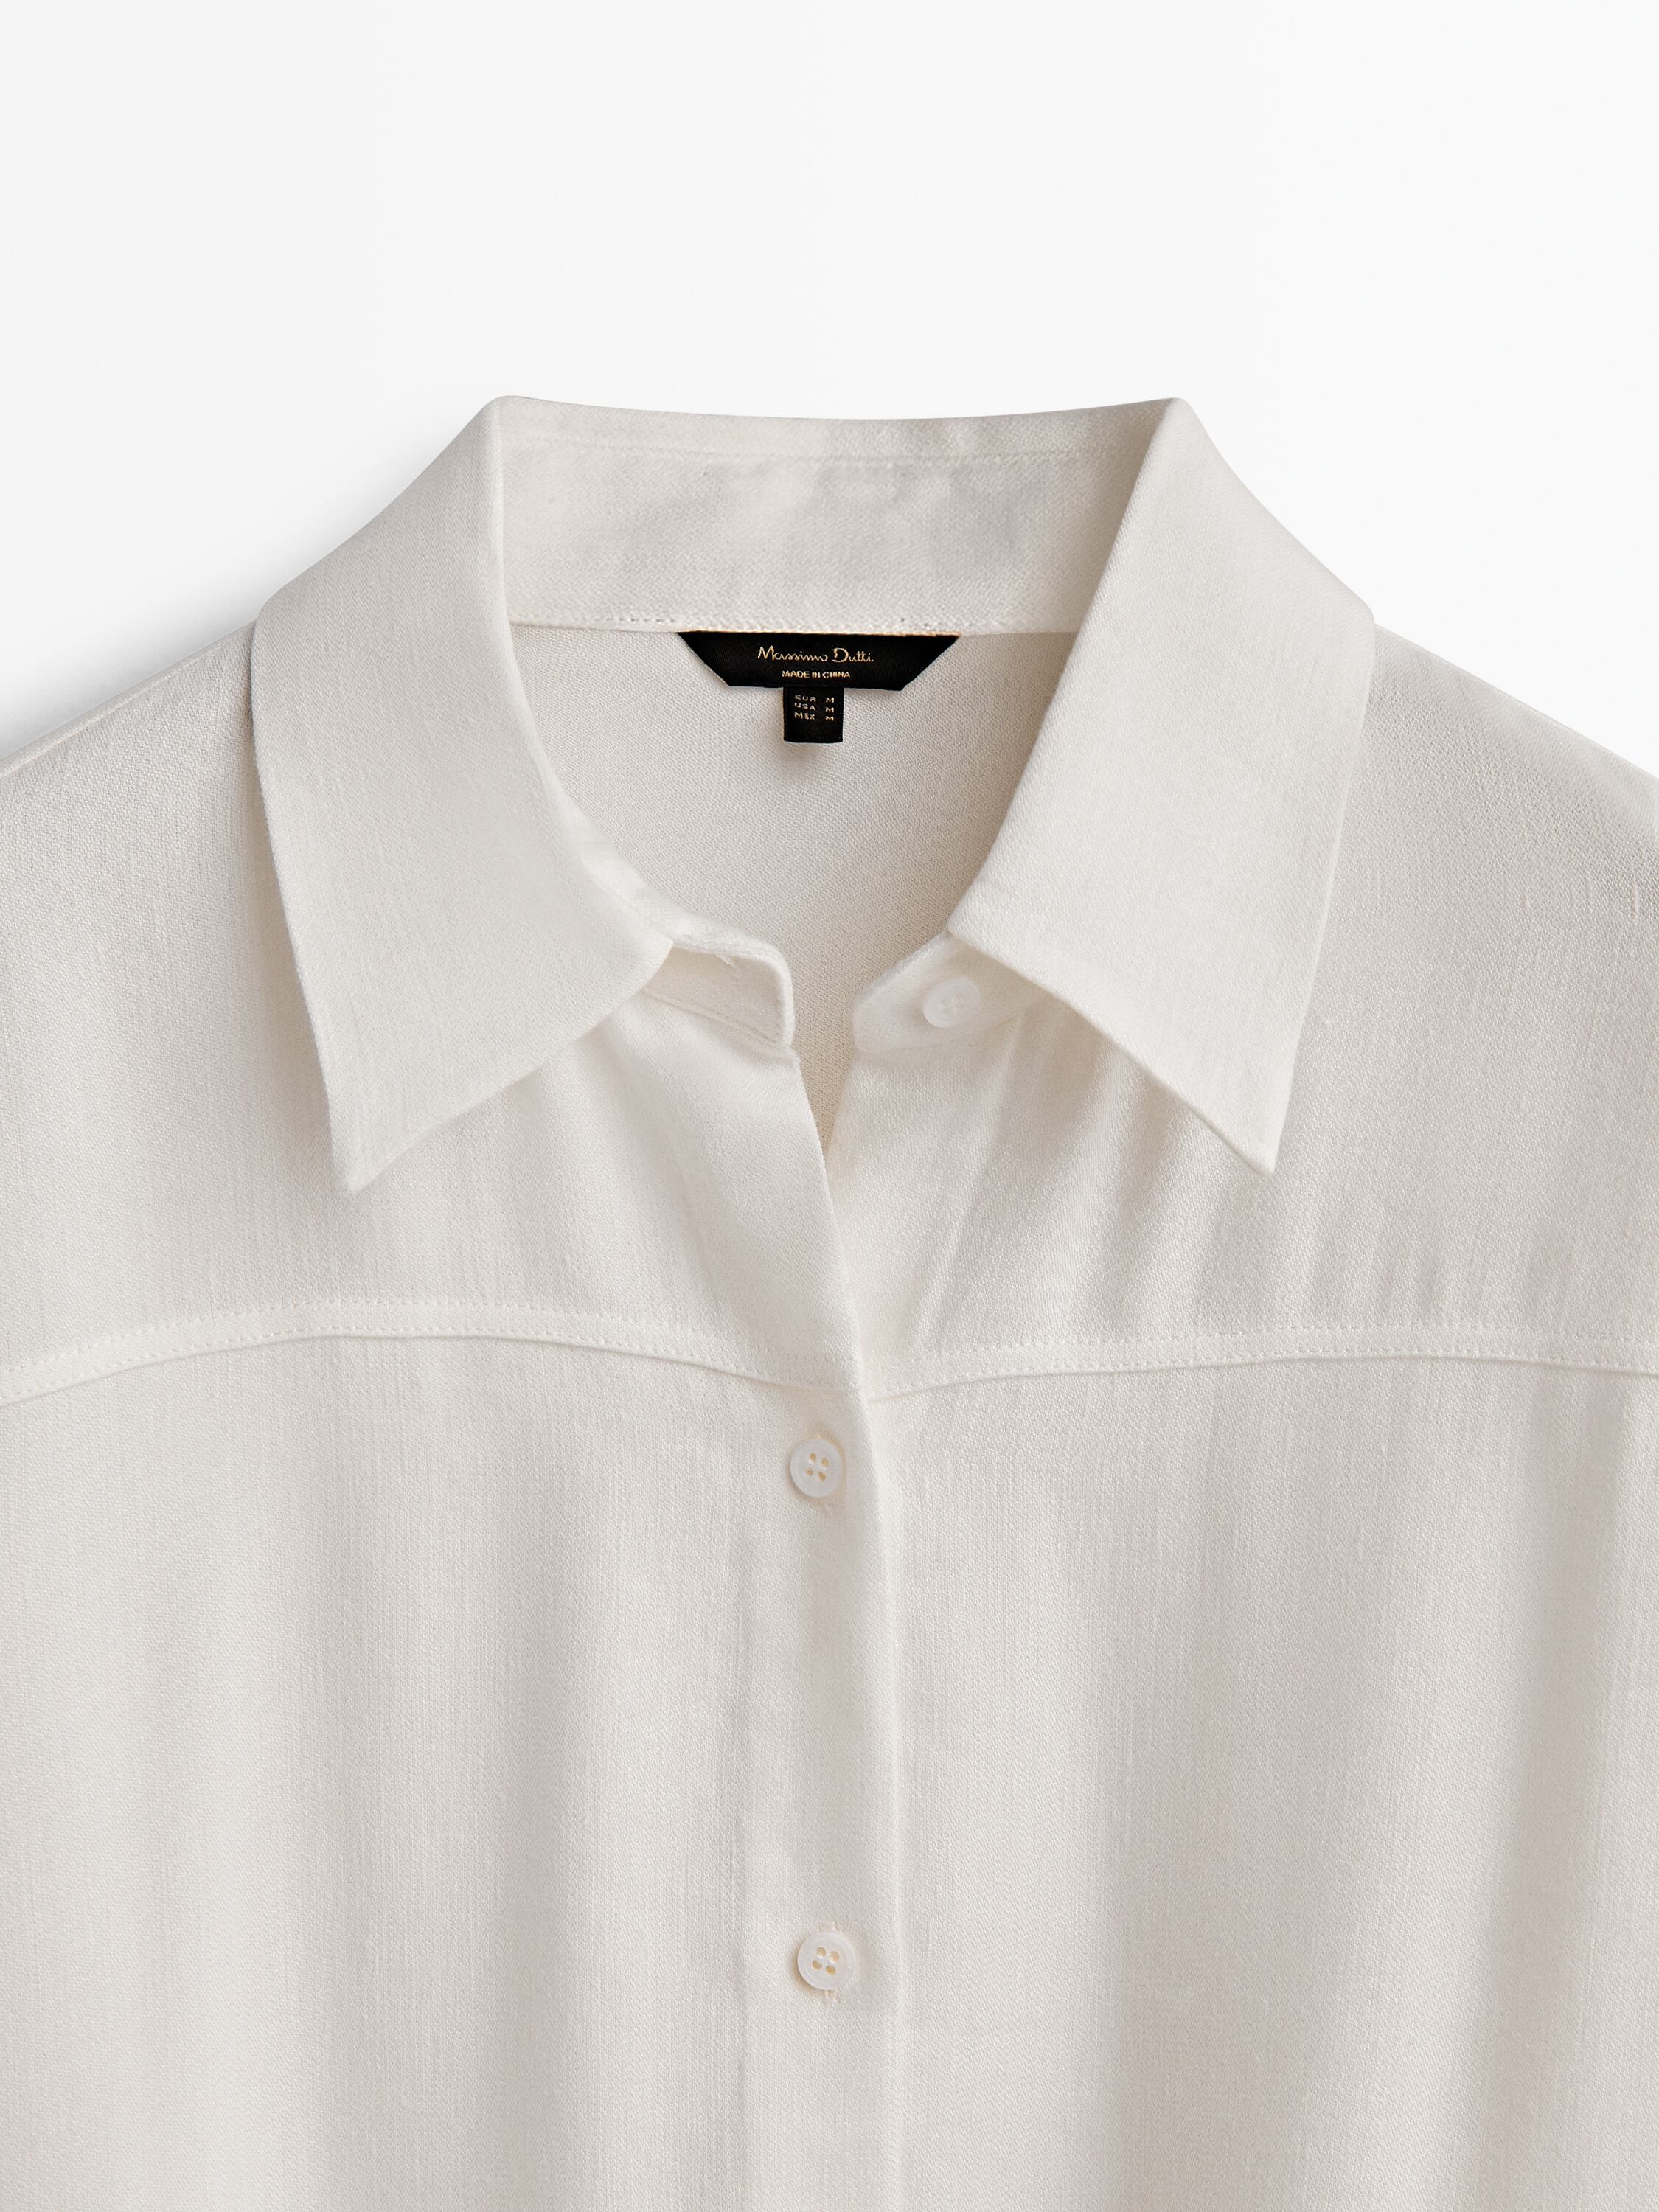 Linen blend shirt dress with seams